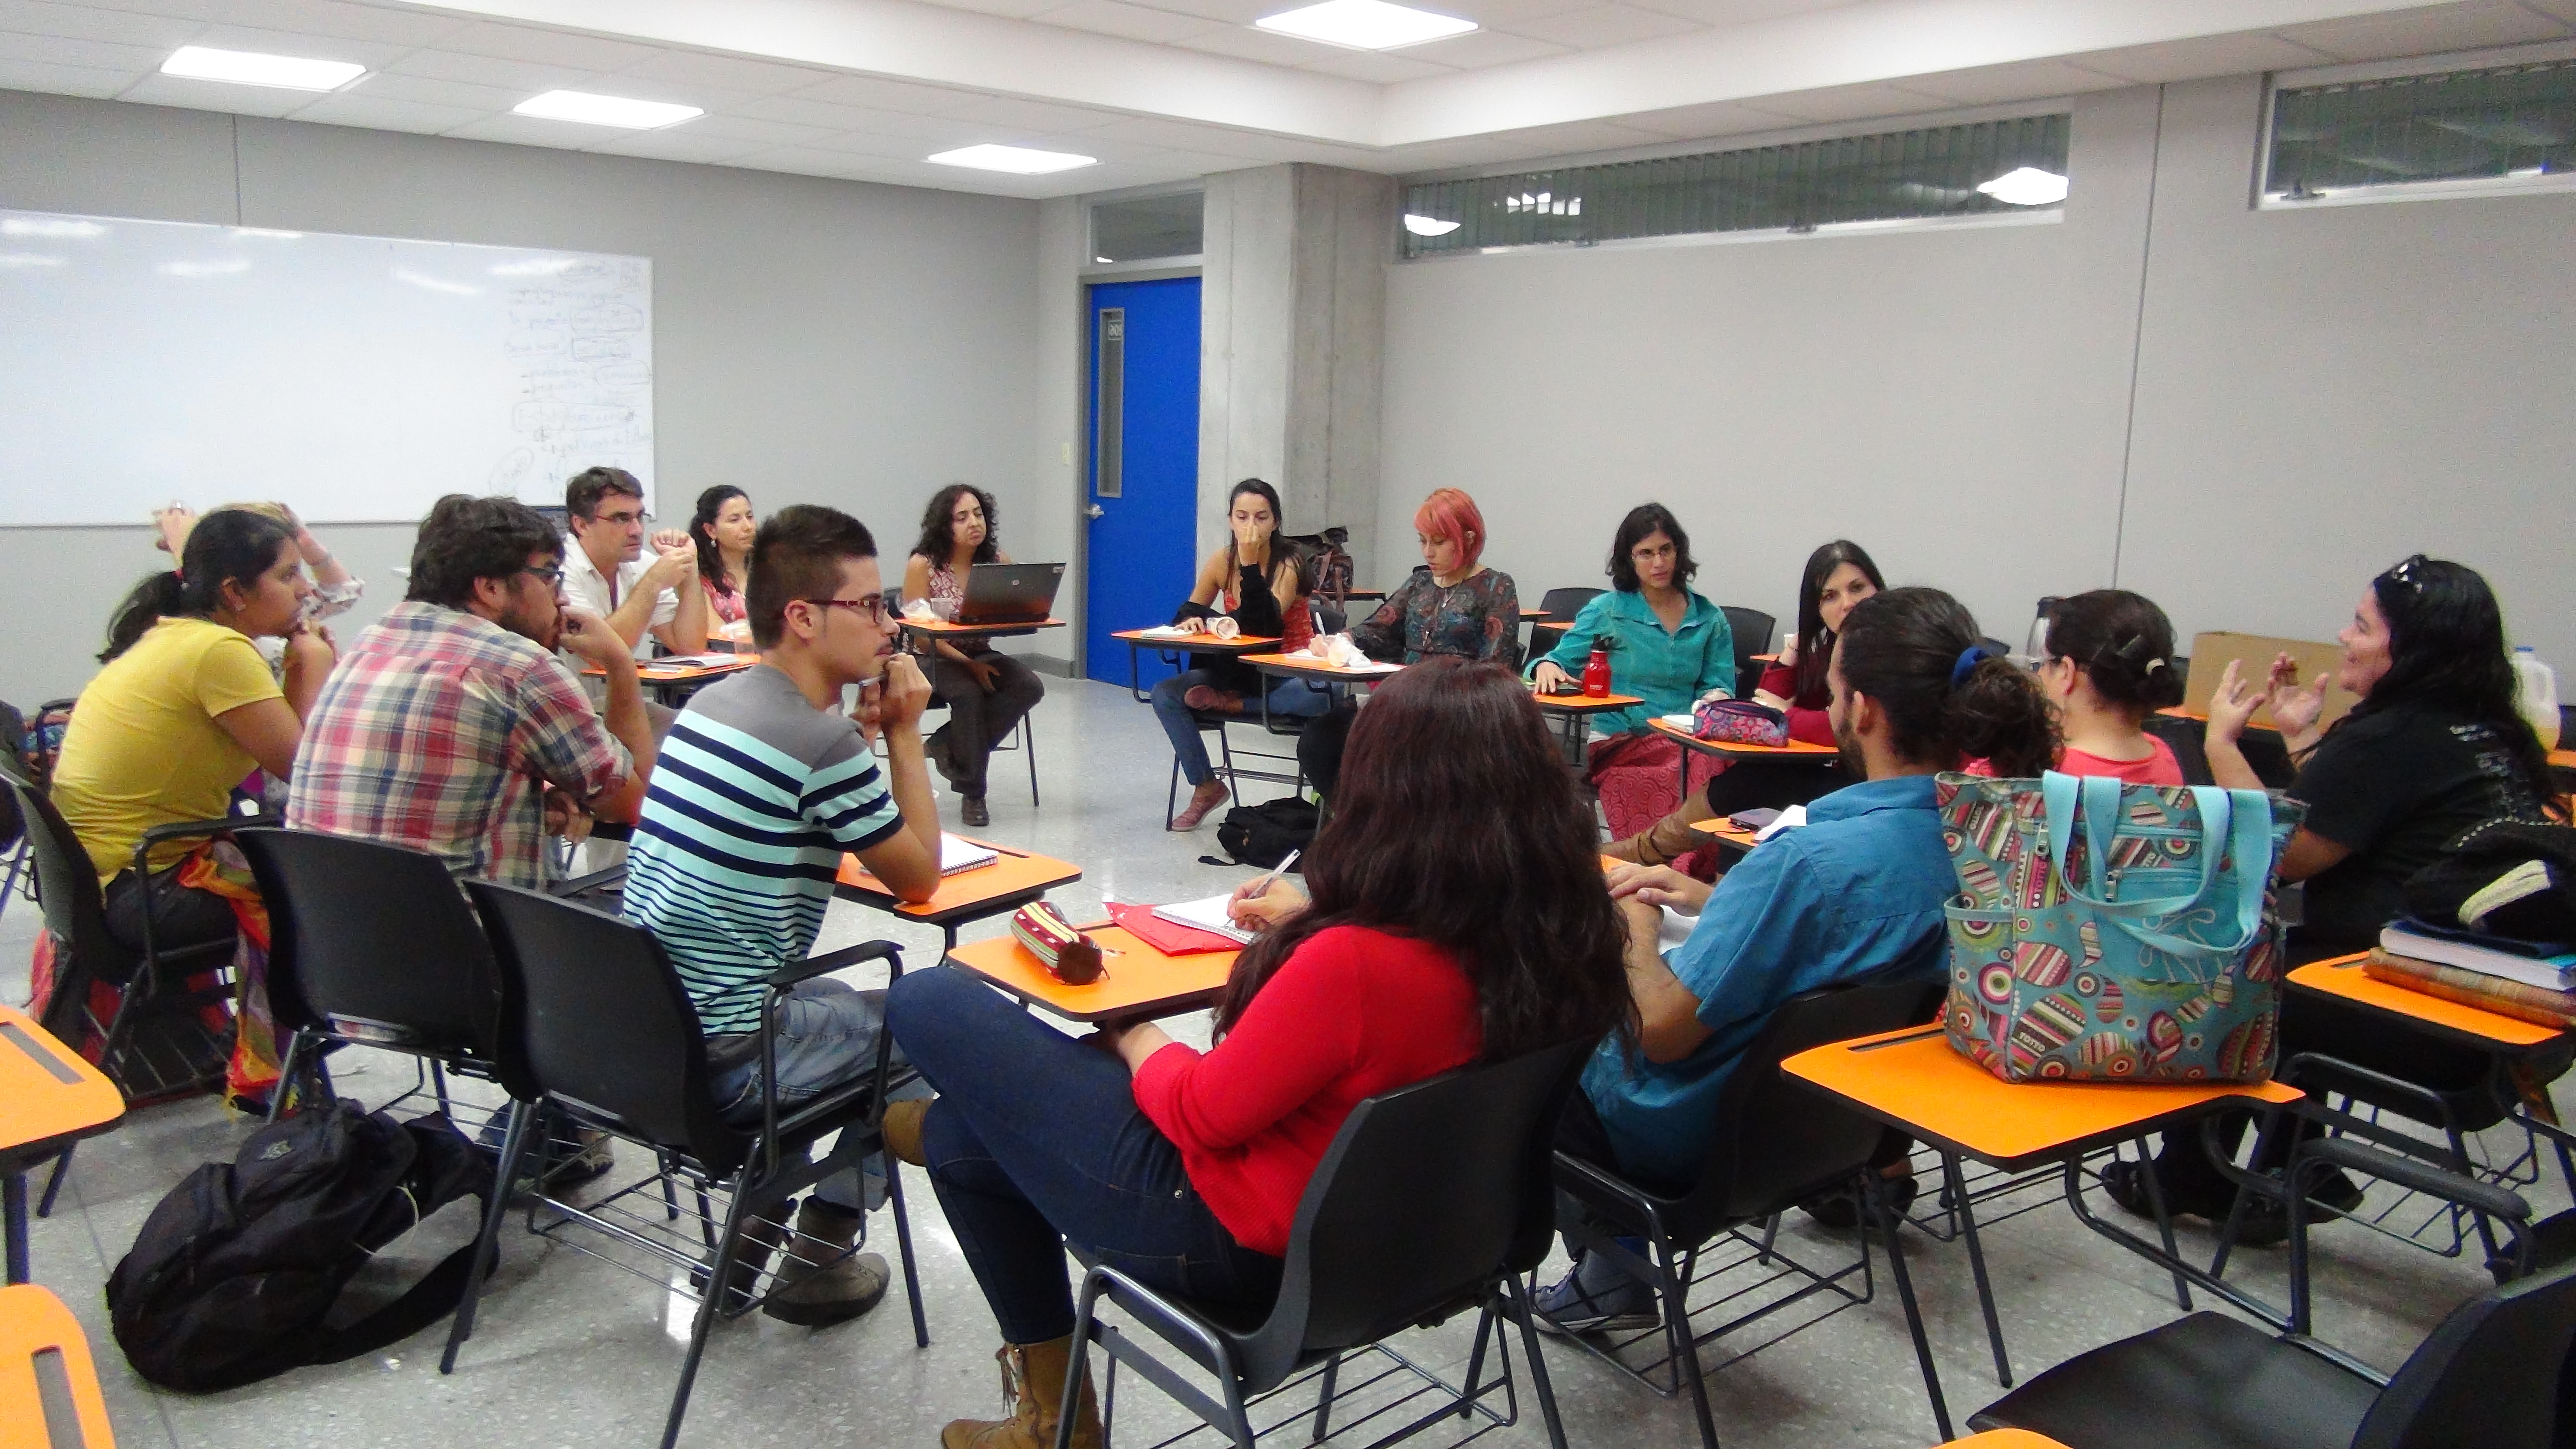 img-noticia-En total, 85 personas participaron de las actividades organizadas durante la Semana de la Acción Social y el Derecho a la Comunicación.  Foto: Natalia Flores Barquero.